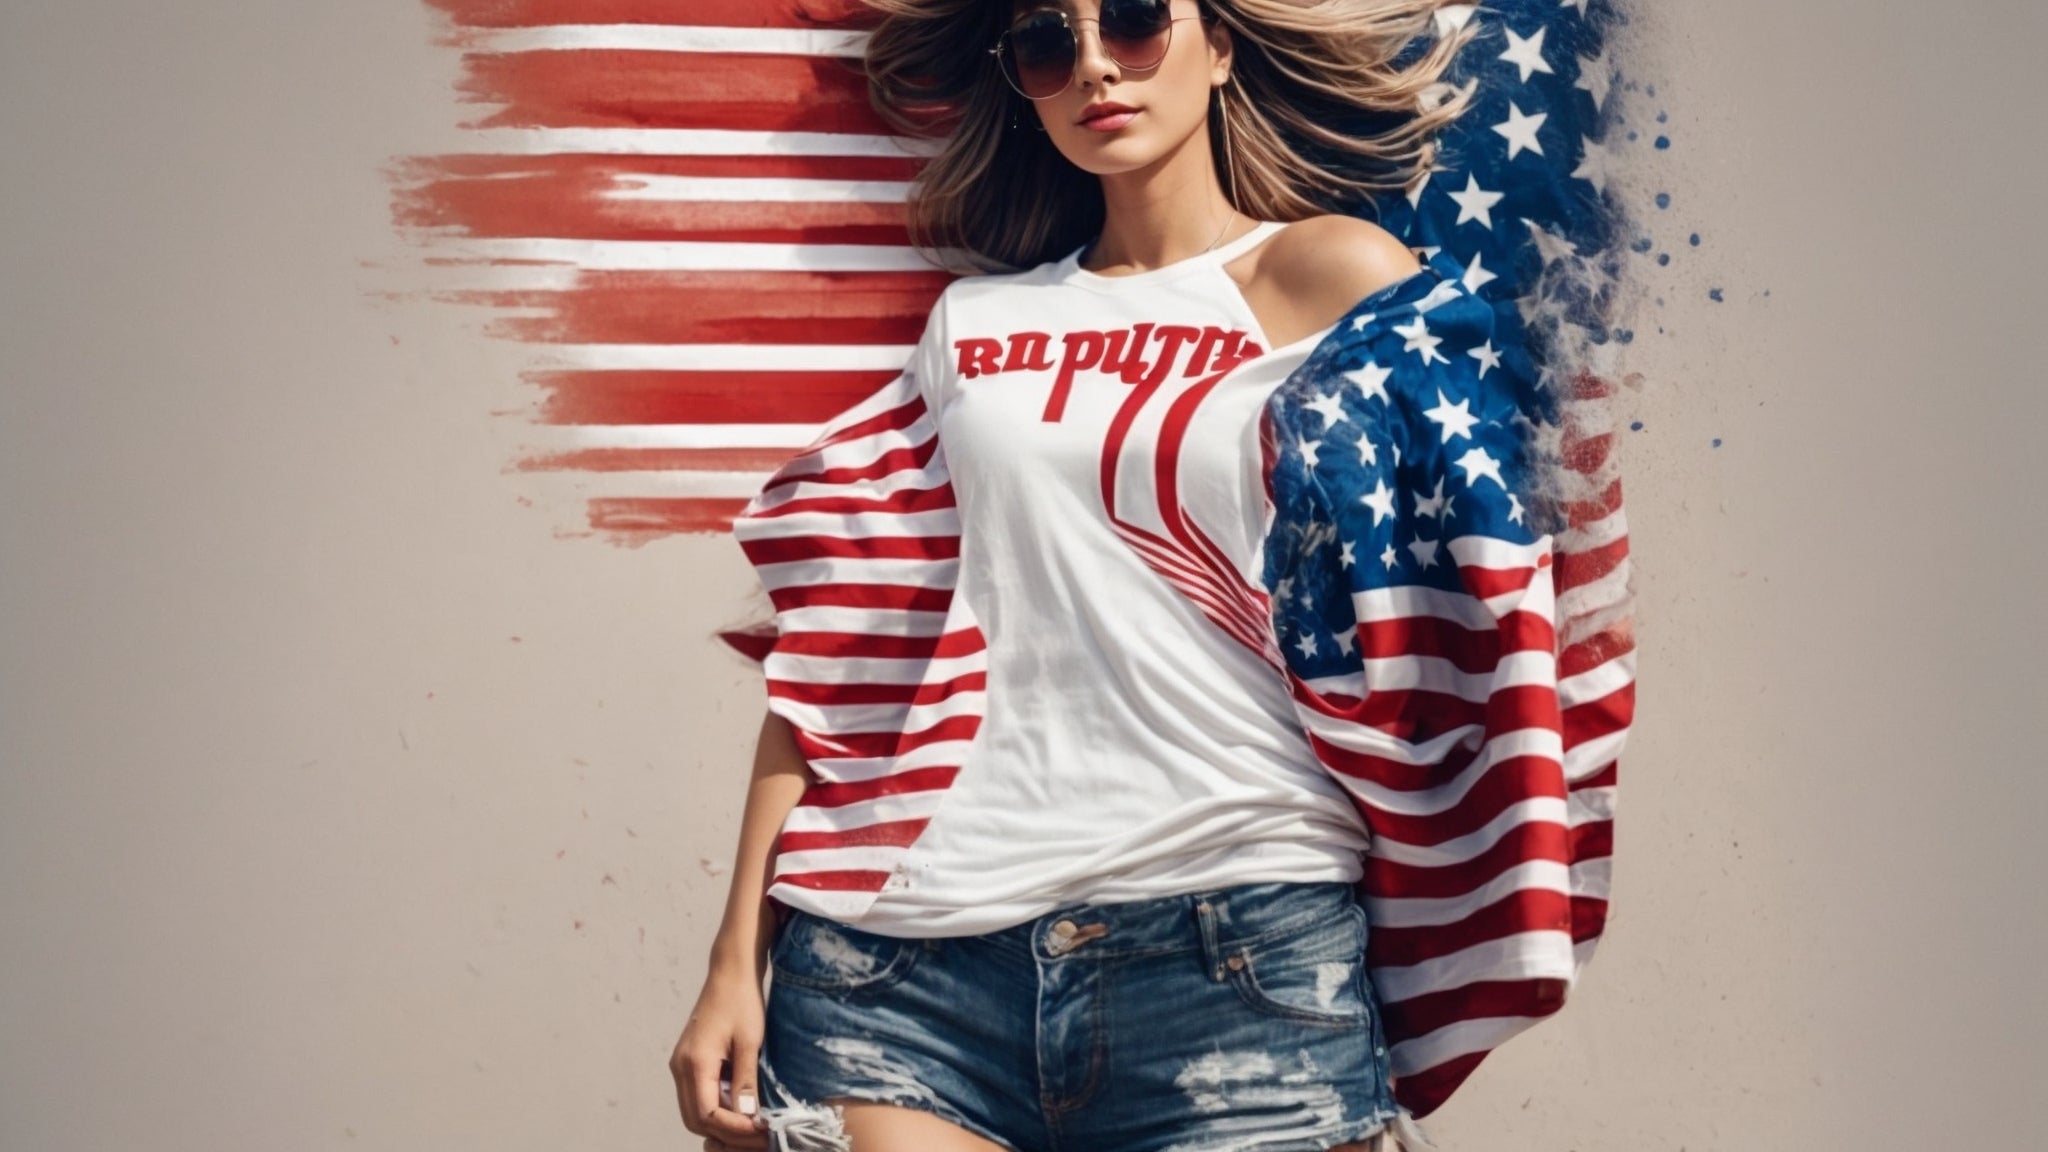 Izrazite svoj republikanski patriotizem z elegantnimi majicami za Trumpove podpornike